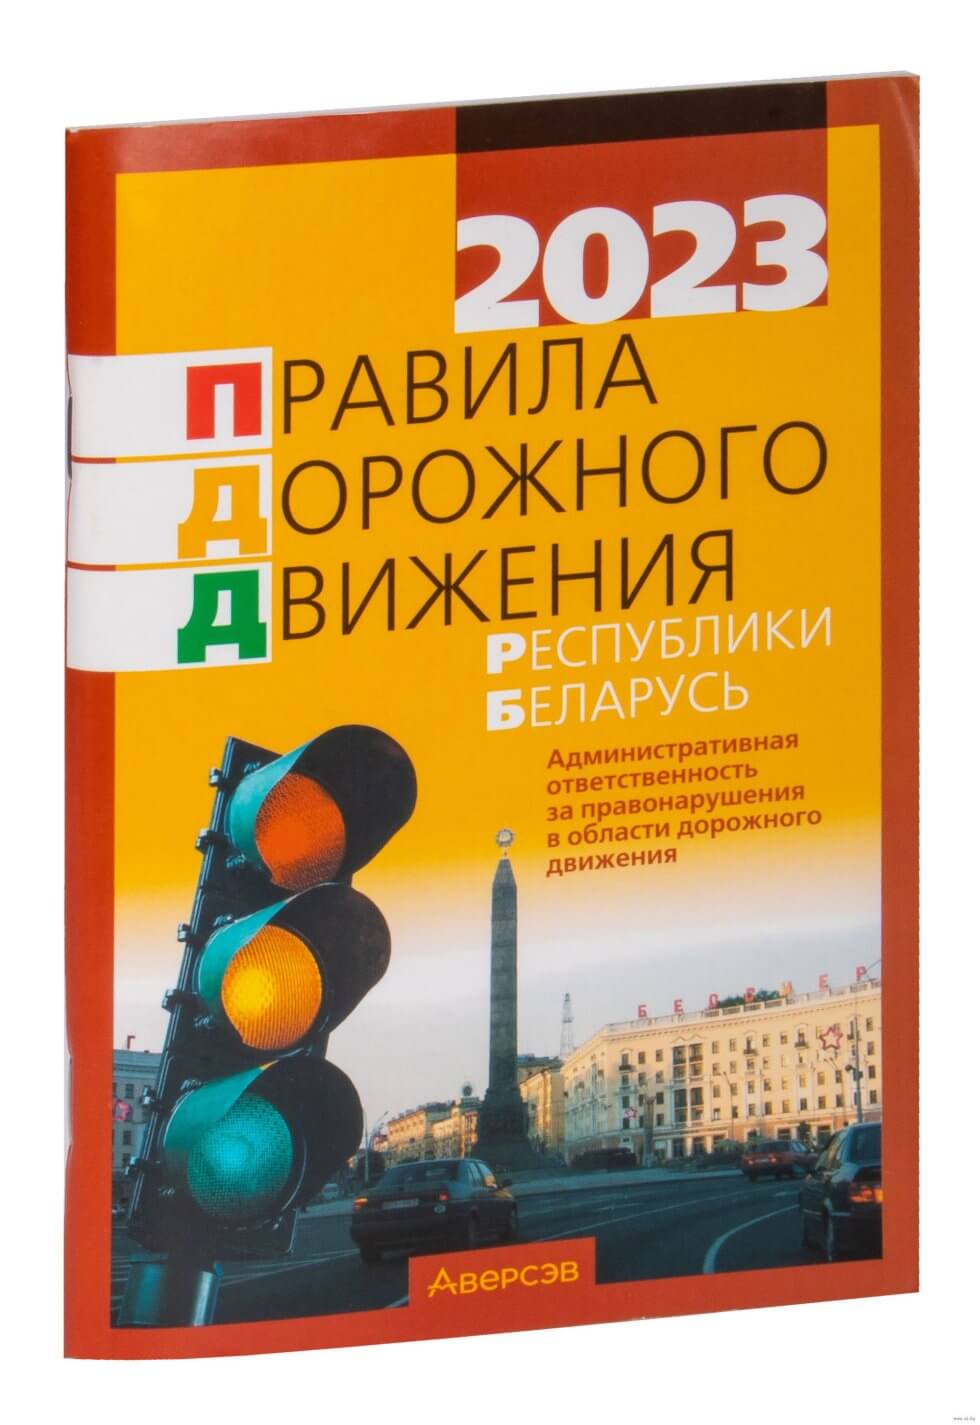 Правила дорожного движения Республики Беларусь 2023